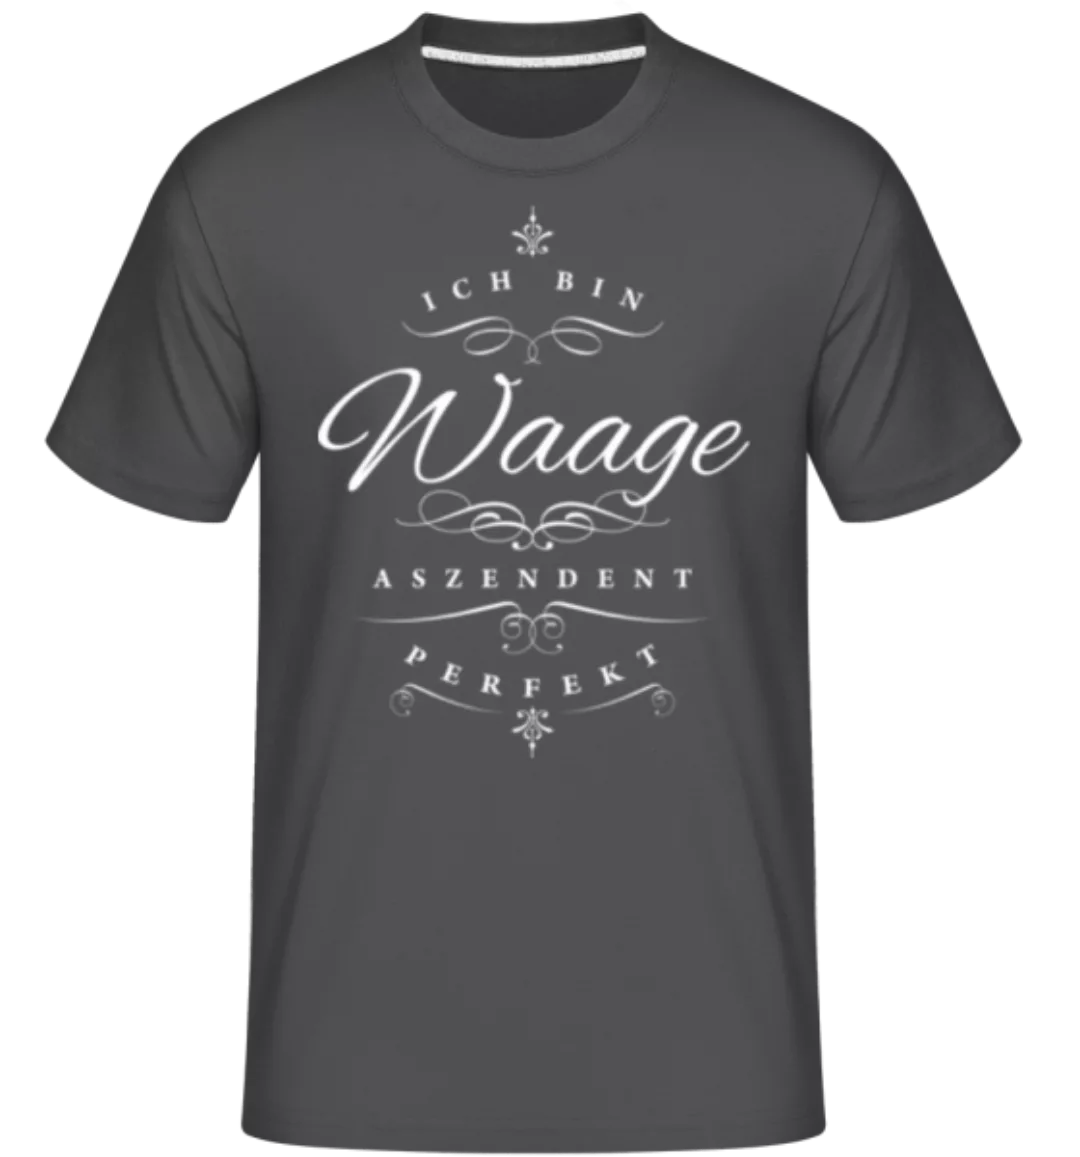 Ich Bin Waage Aszendent Perfekt · Shirtinator Männer T-Shirt günstig online kaufen